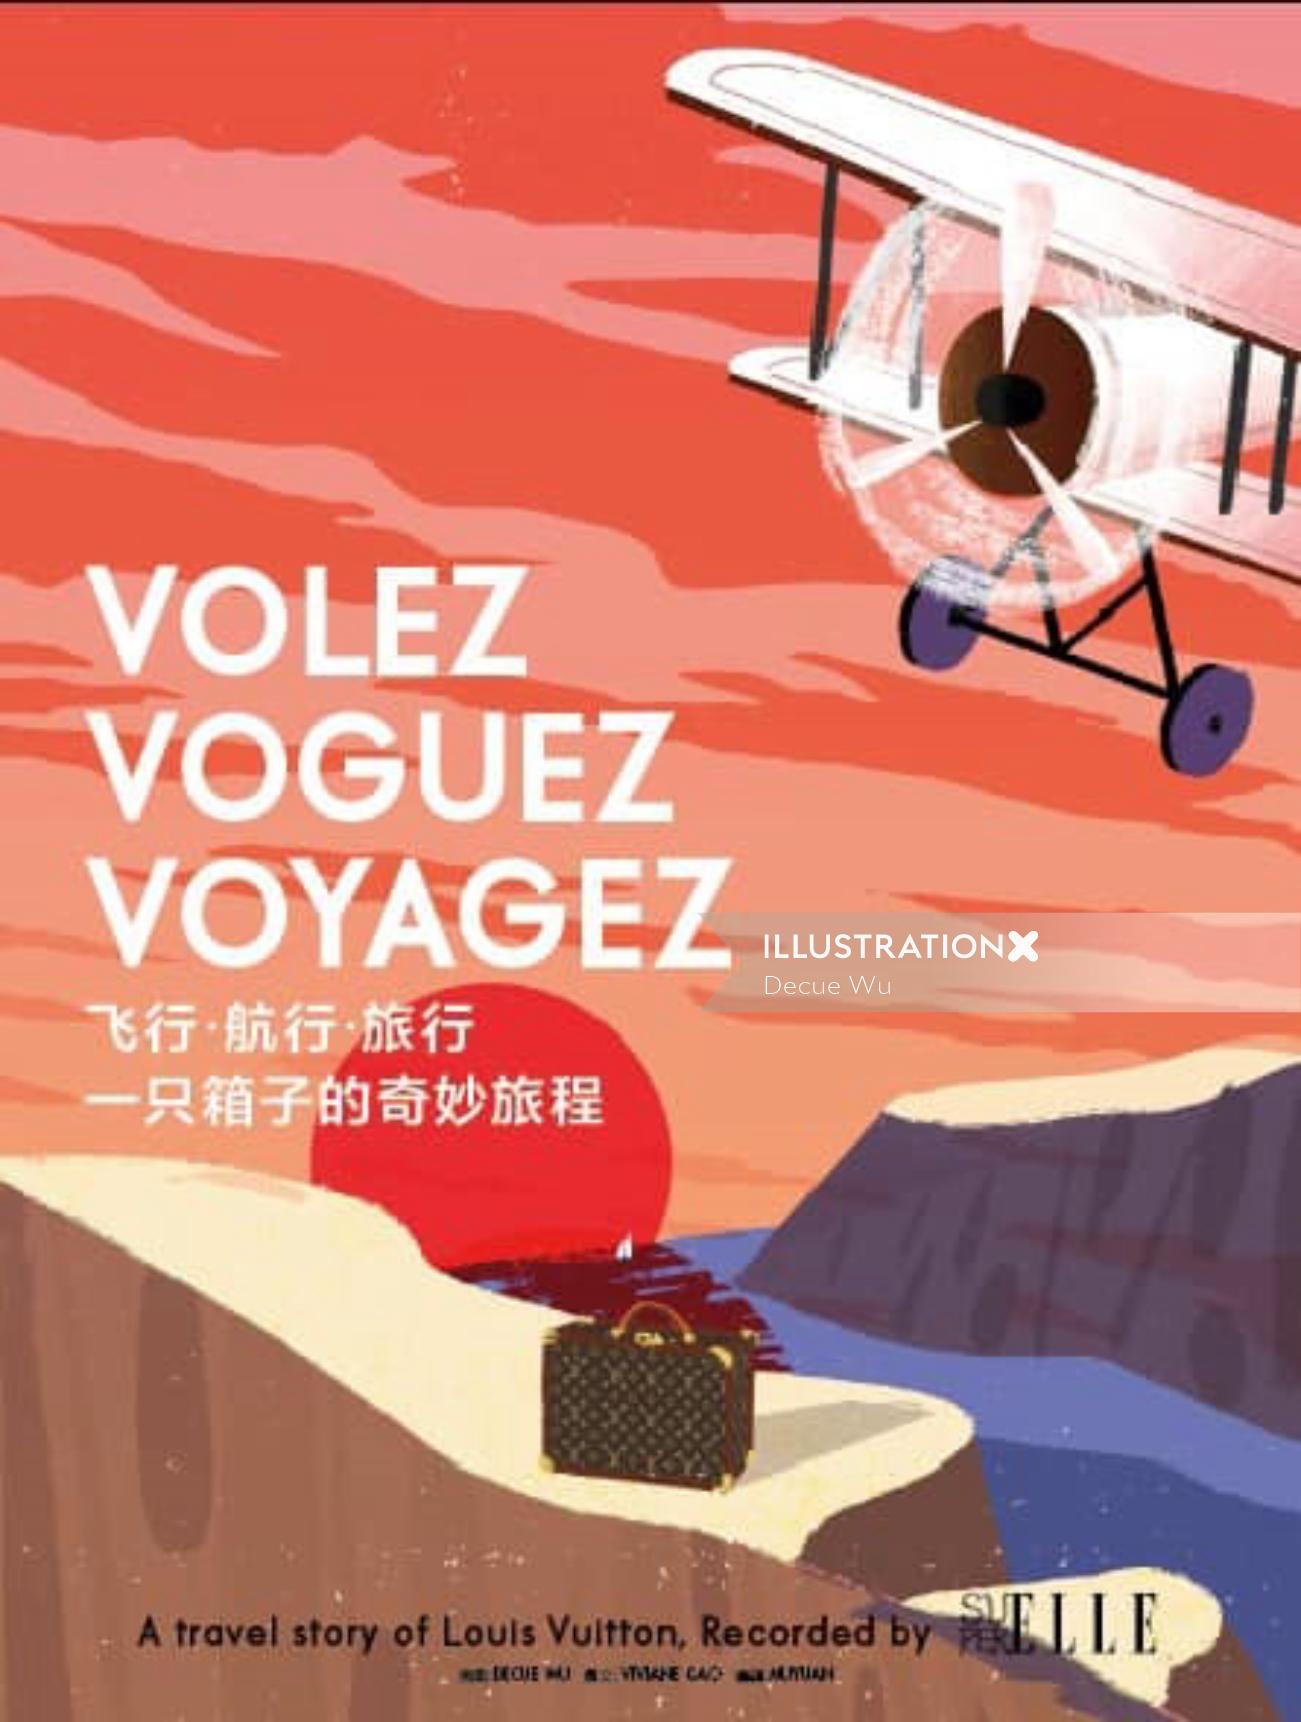 Ilustração da capa da revista Vogue por Decue Wu